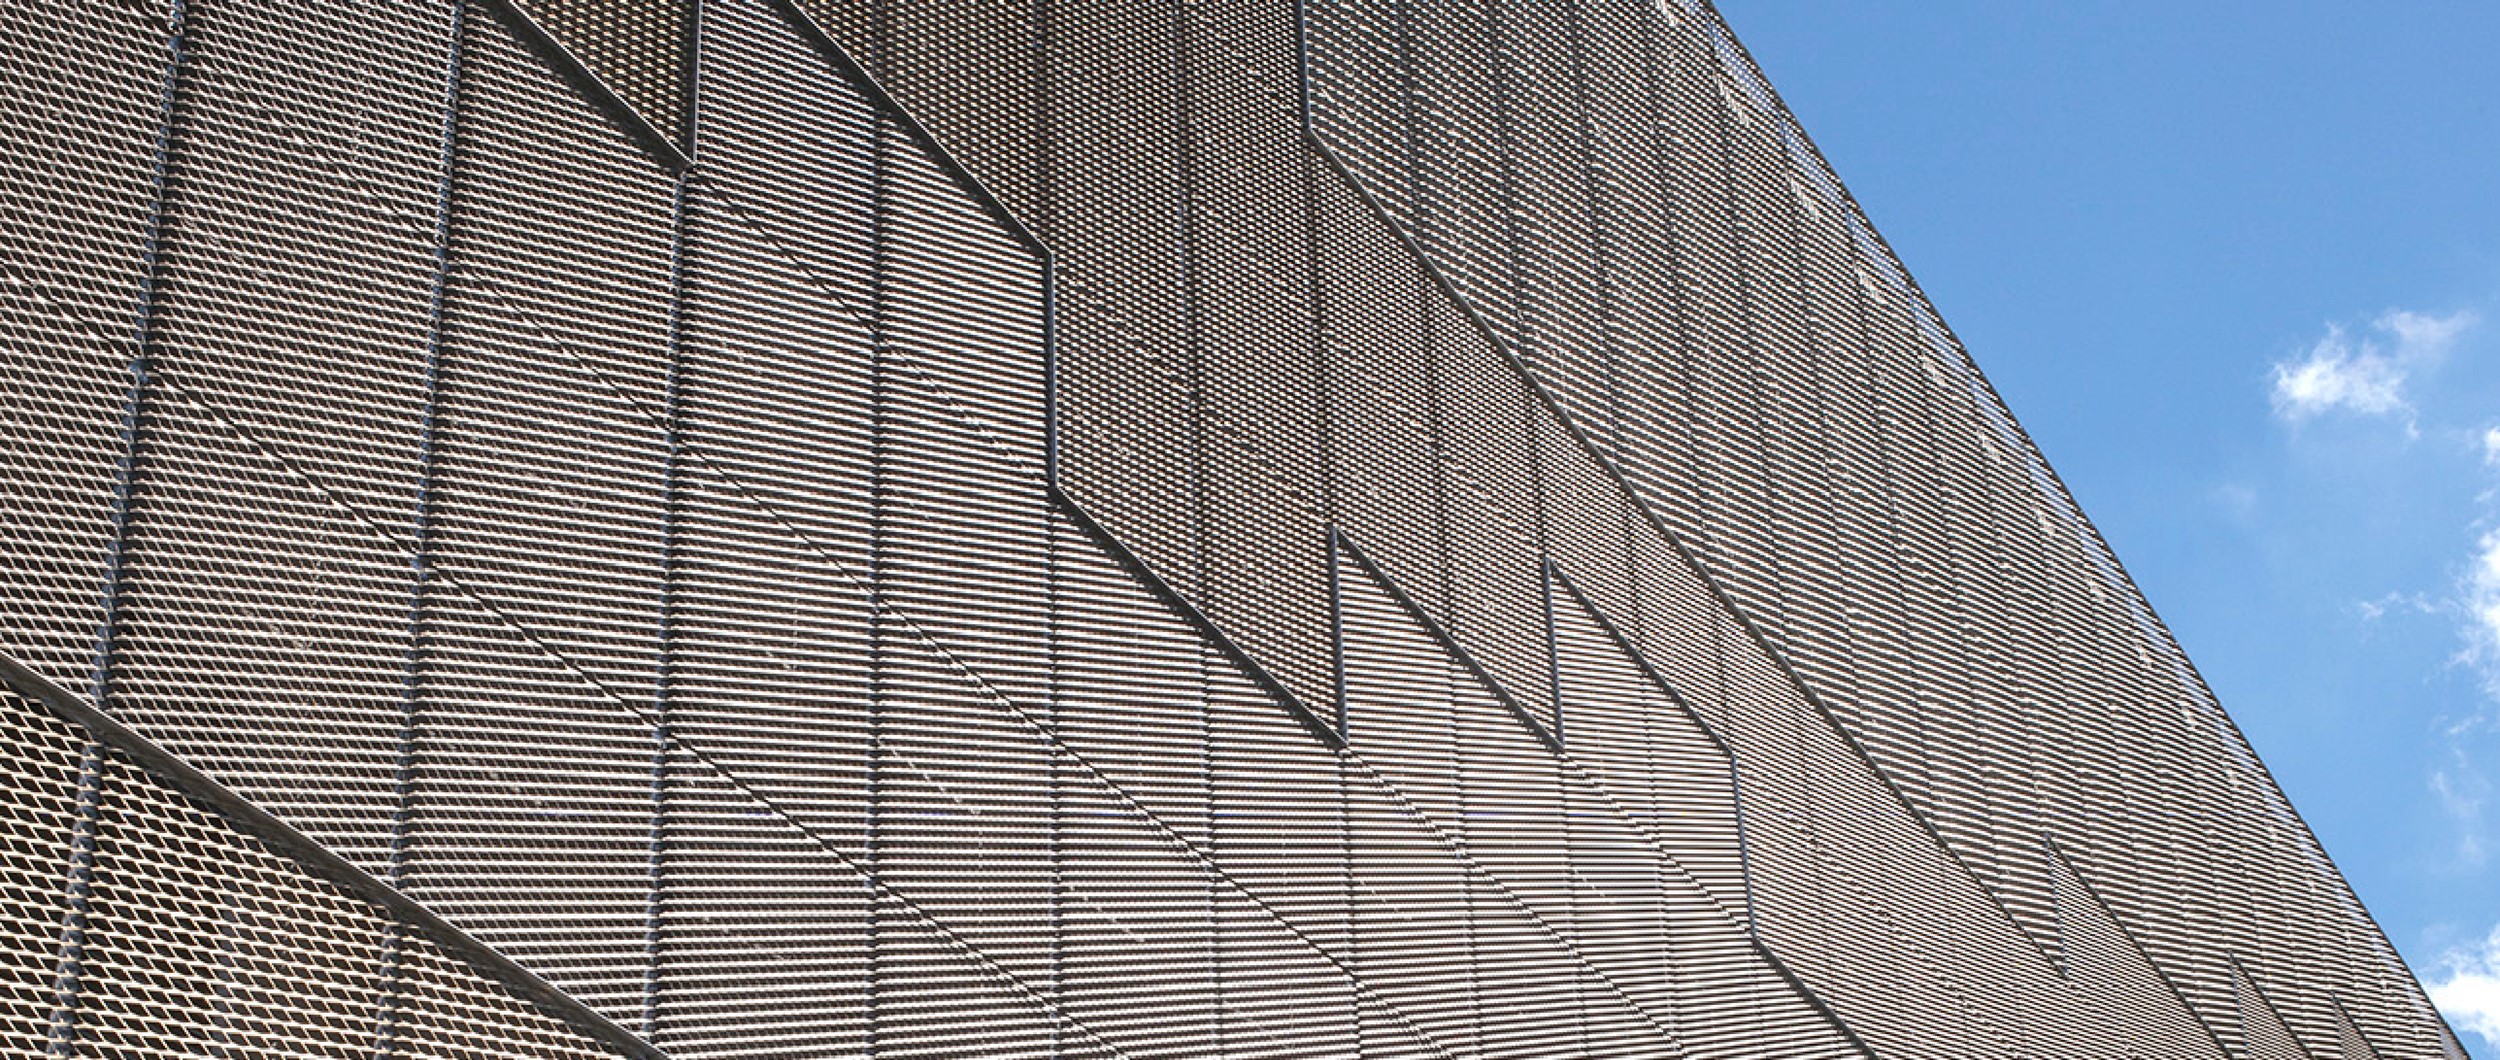 Det store stationsanlæg i Tjele, løftes op af en mørk betonbase, hvorefter den er blevet beklædt med strækmetal i forskellige anodiseringer og størrelser.